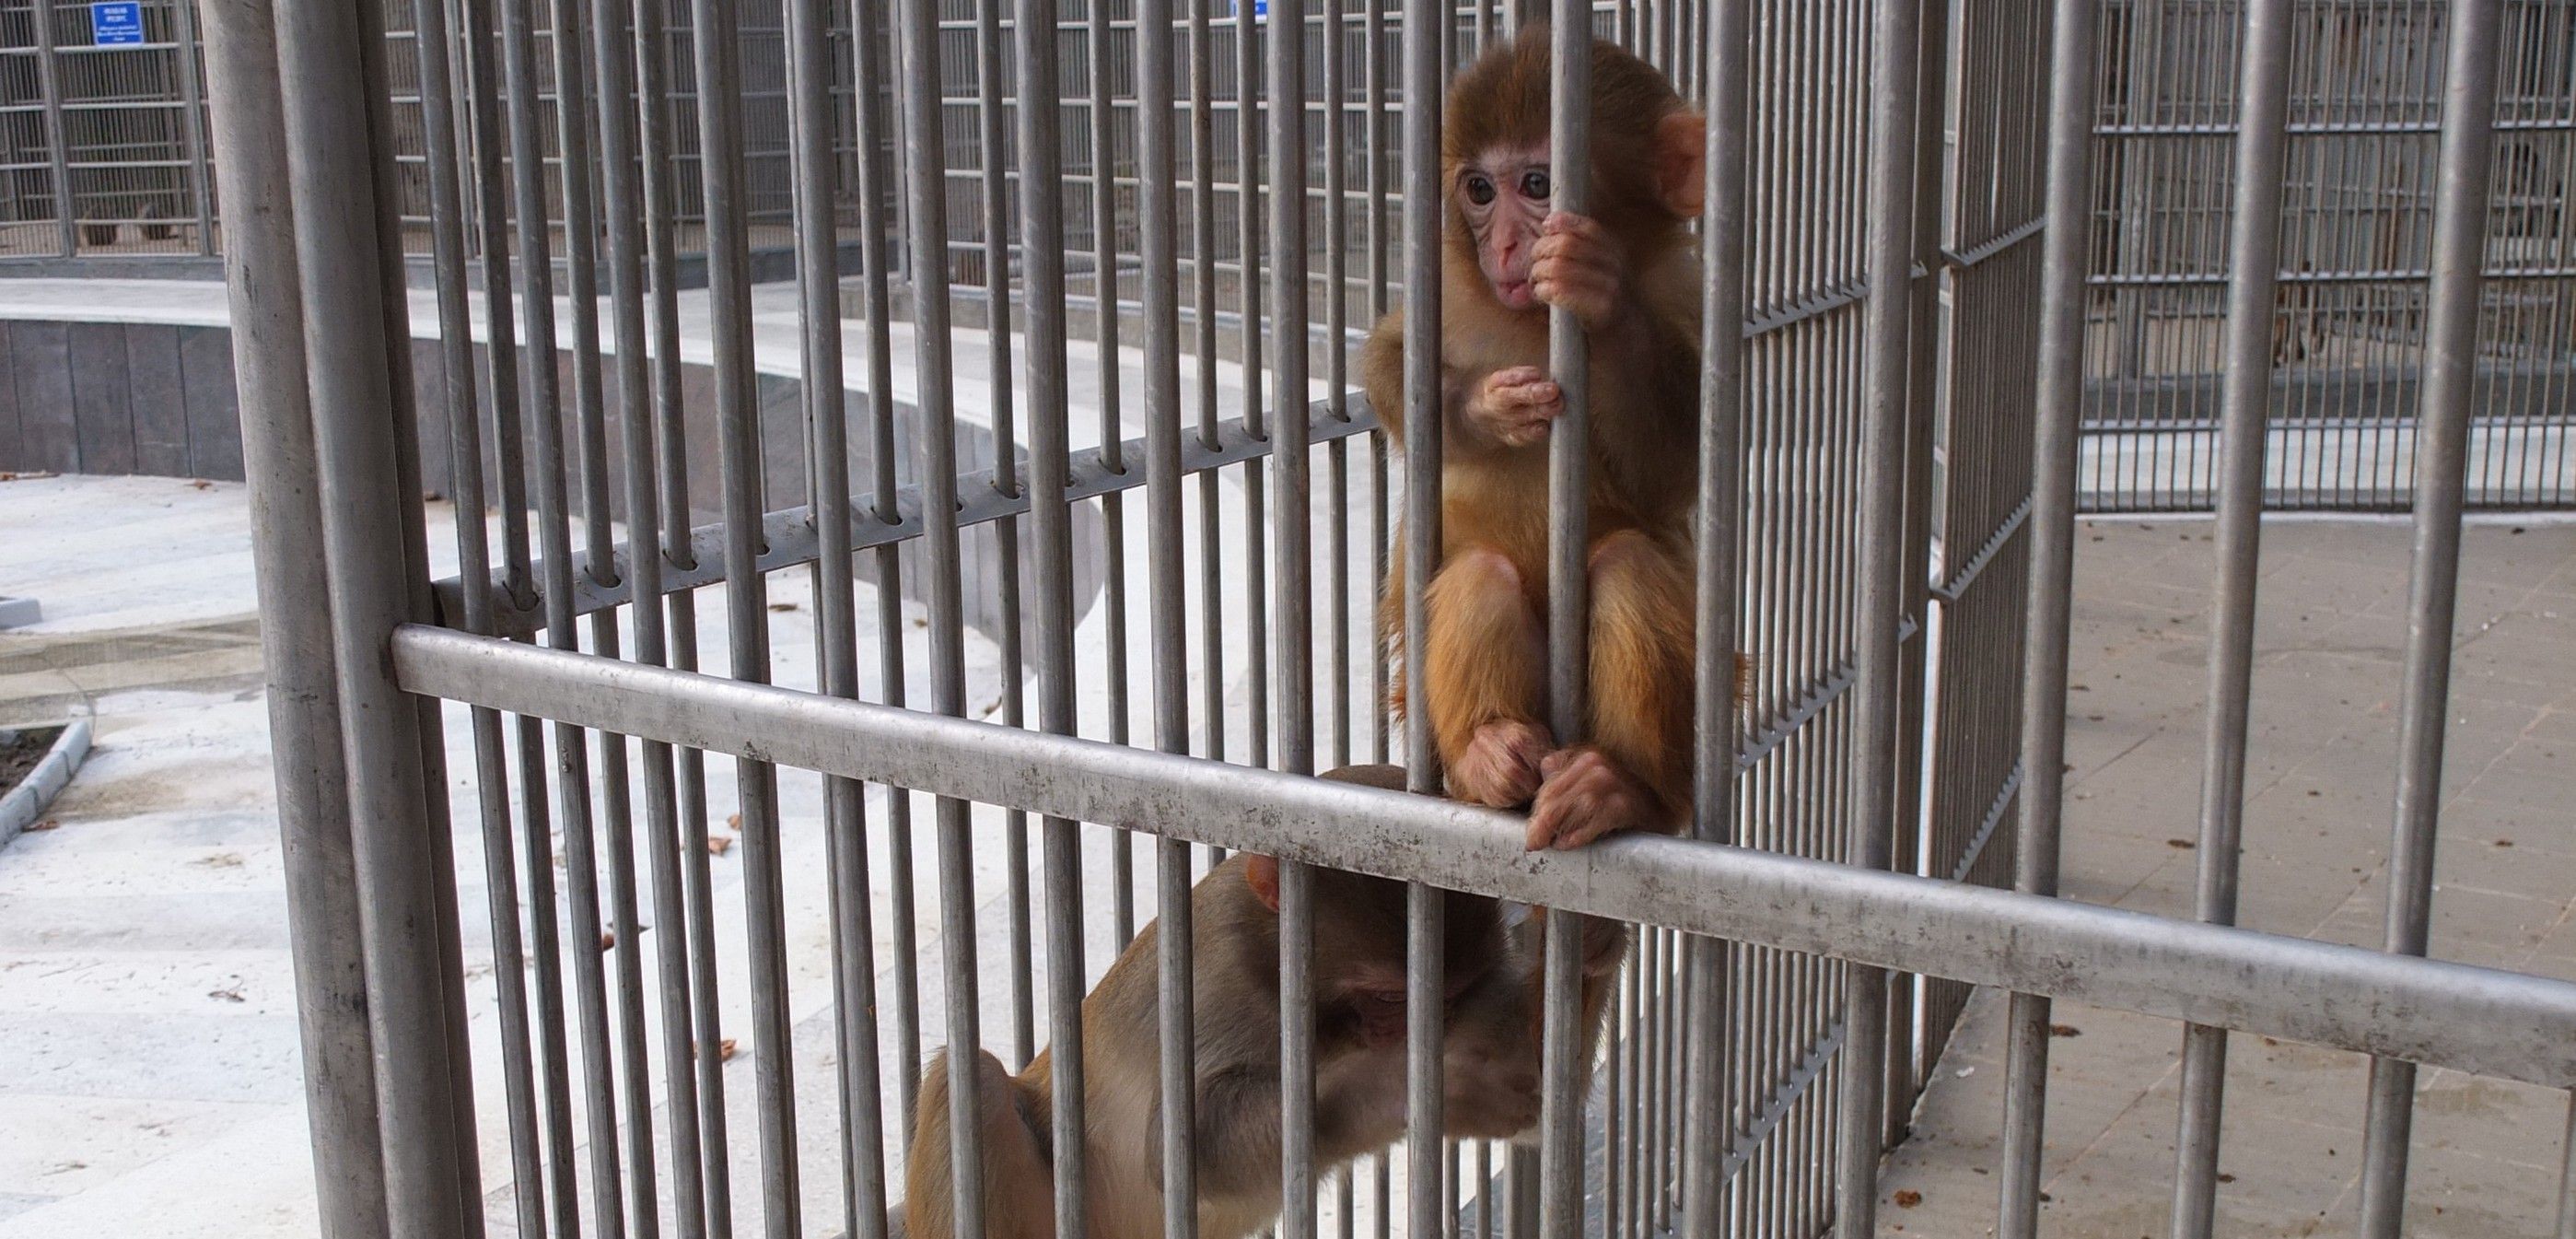 Macacos rhesus, la especie más utilizada en experimentos, en un centro de investigación / Foto: JMP